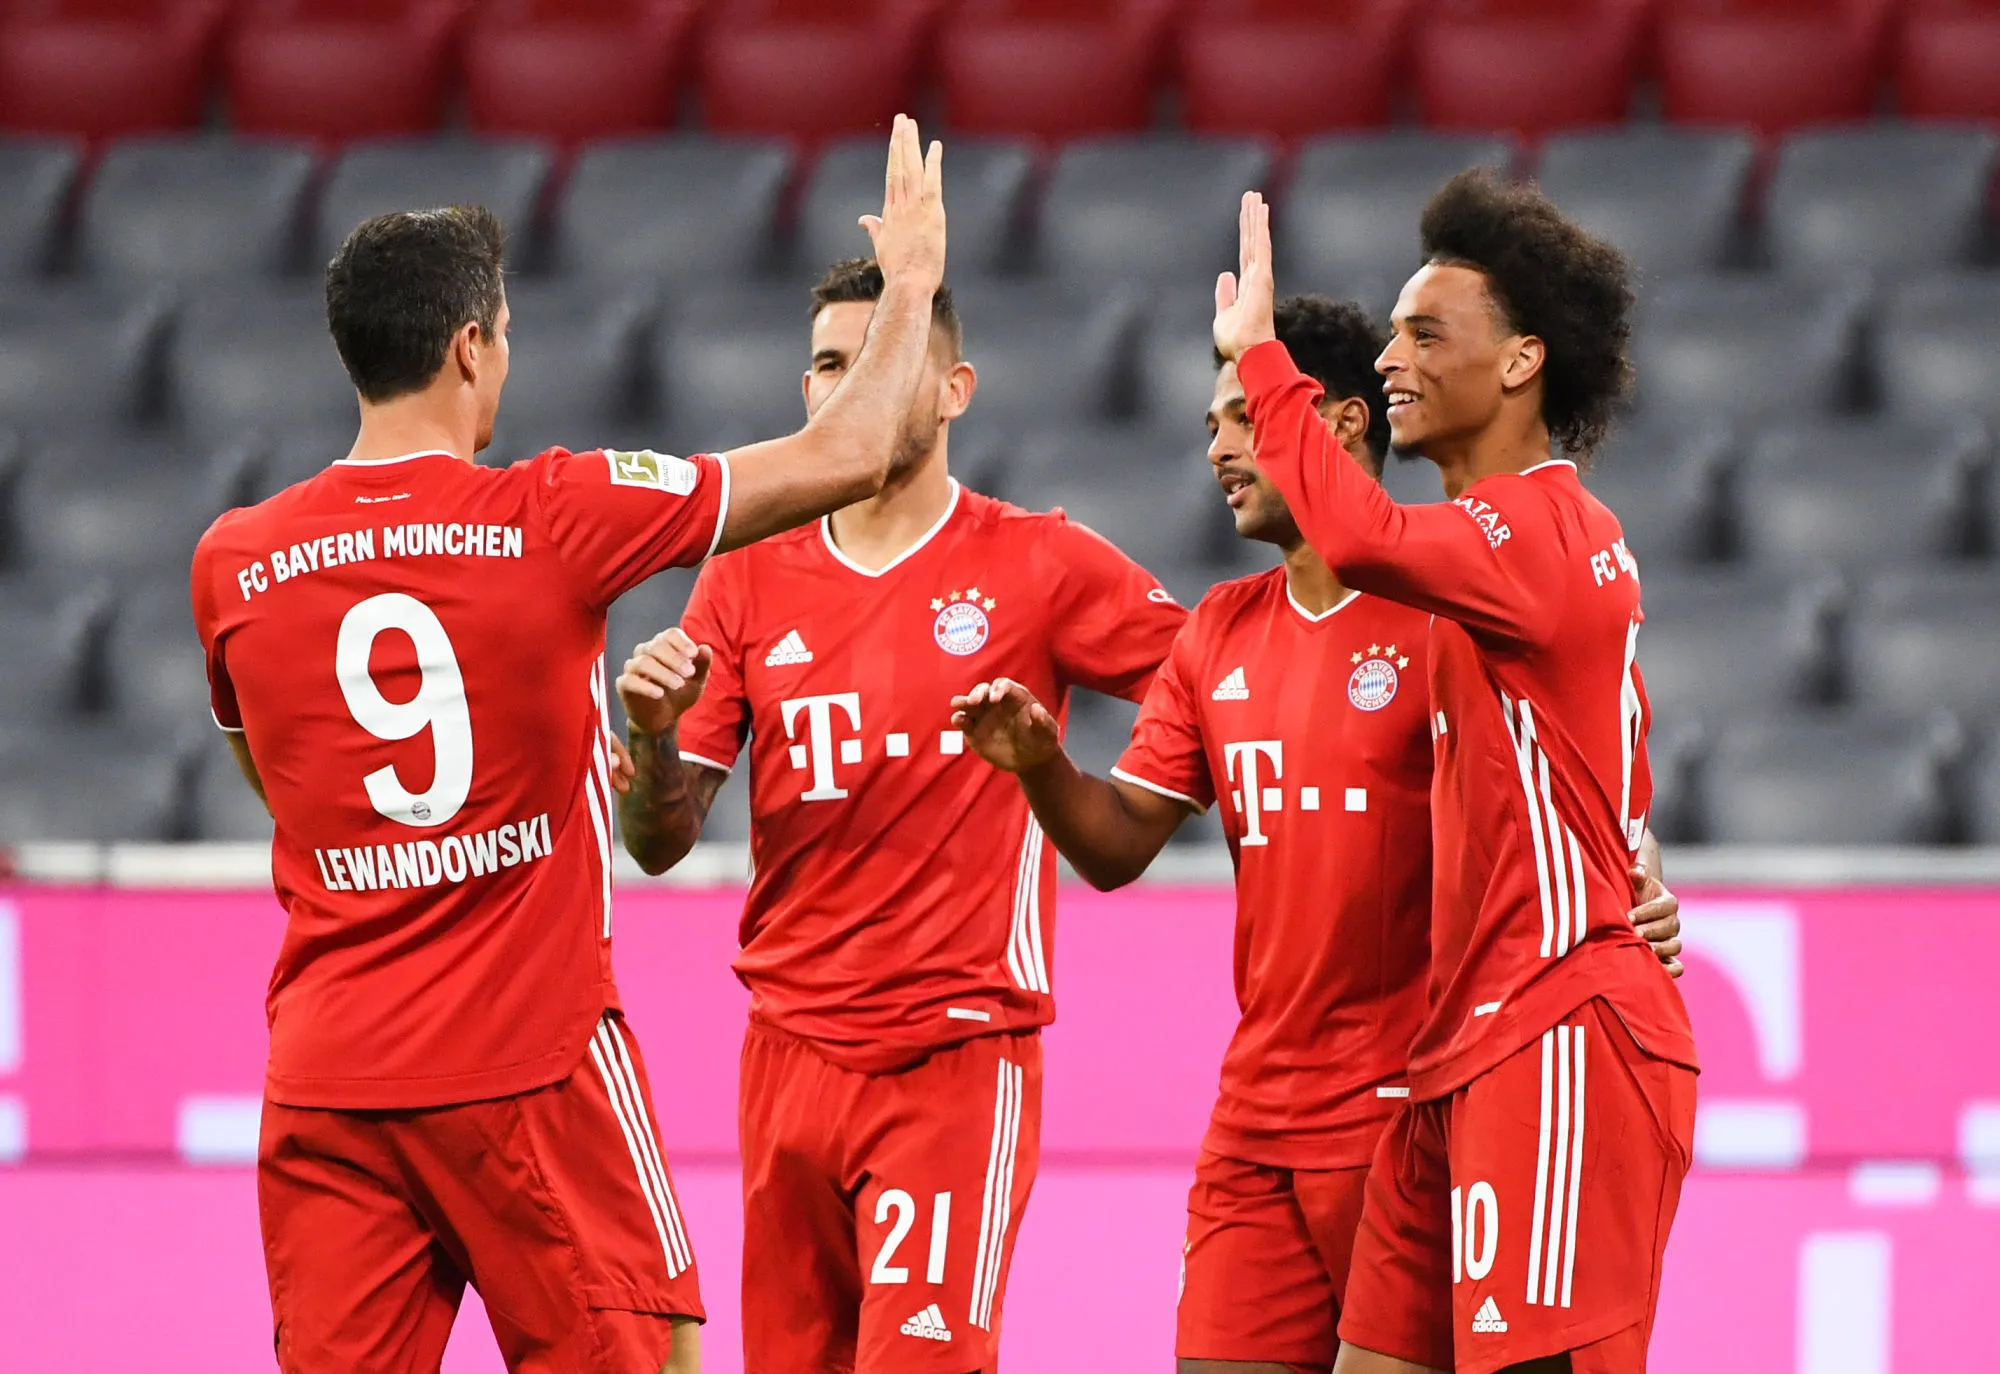 Pronostic Lazio Bayern Munich : Analyse, prono et cotes doublées sur le match de Ligue des champions